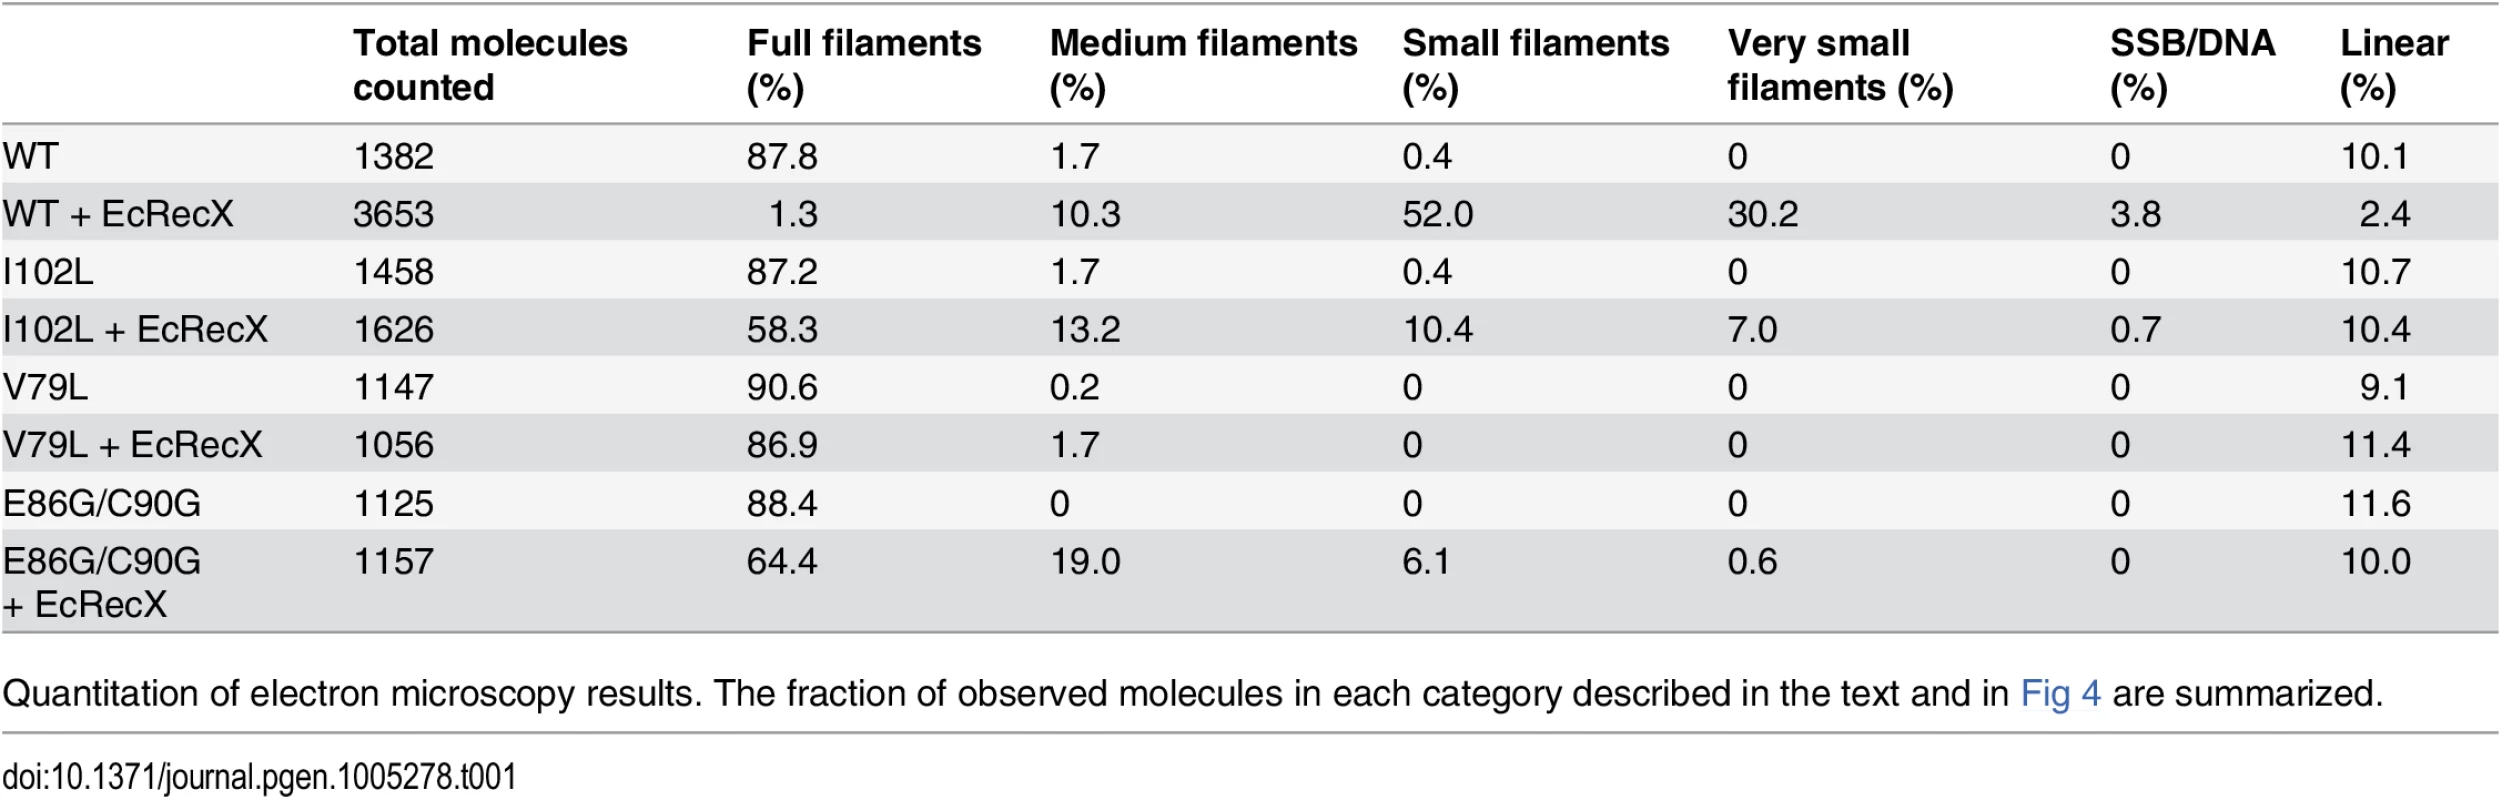 Effect of EcRecX on RecA and RecA variant filaments.